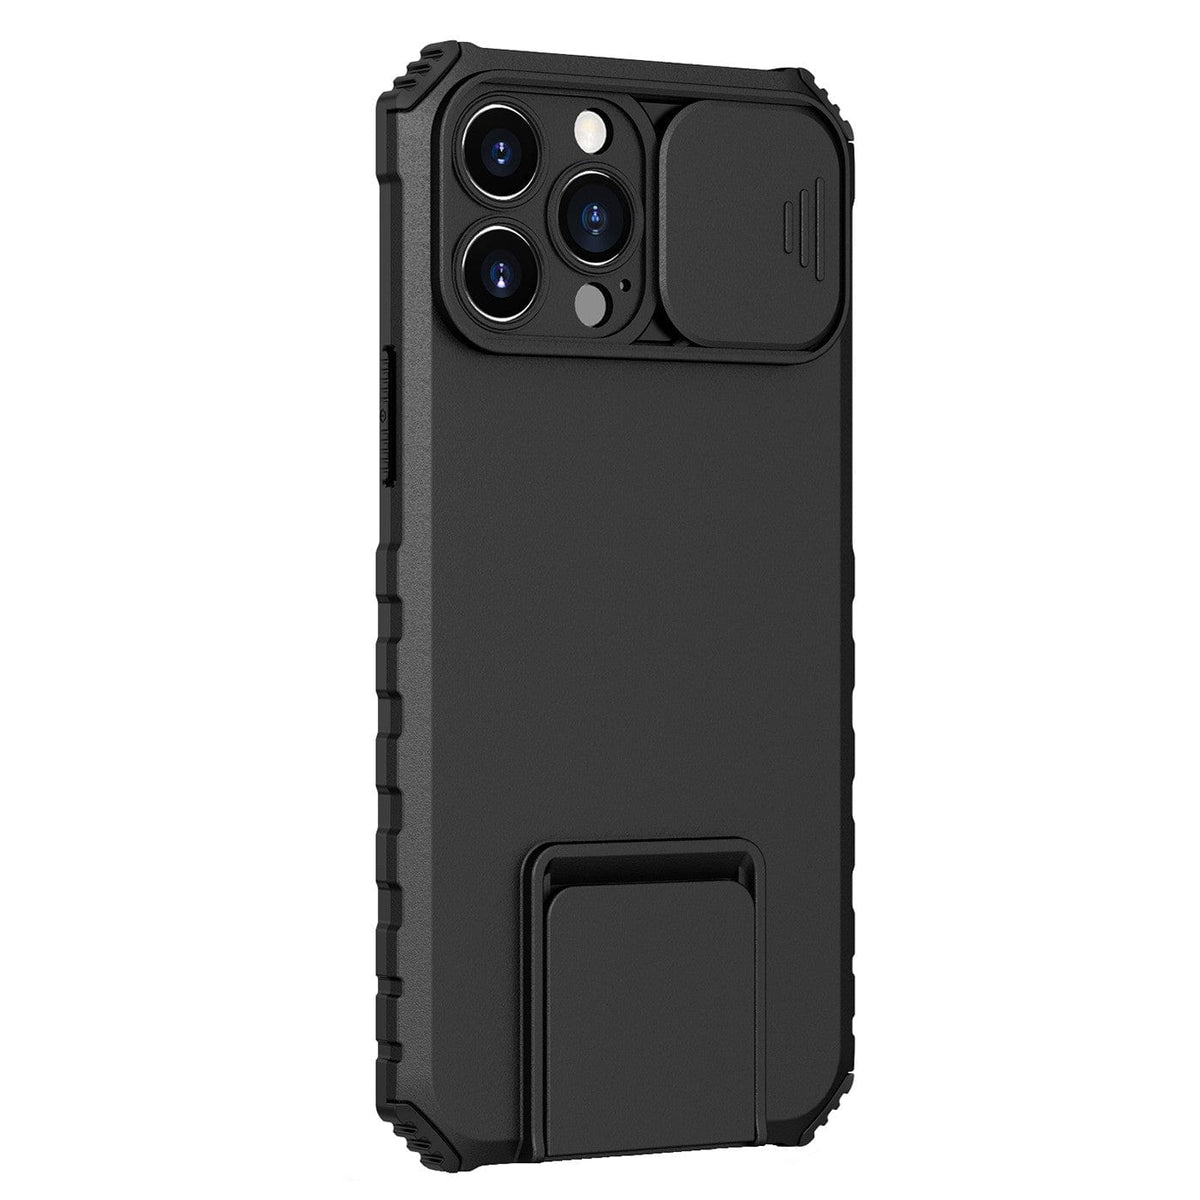 Husa Defender cu Stand pentru iPhone 11 Pro Max, Negru, Suport reglabil, Antisoc, Protectie glisanta pentru camera, Flippy